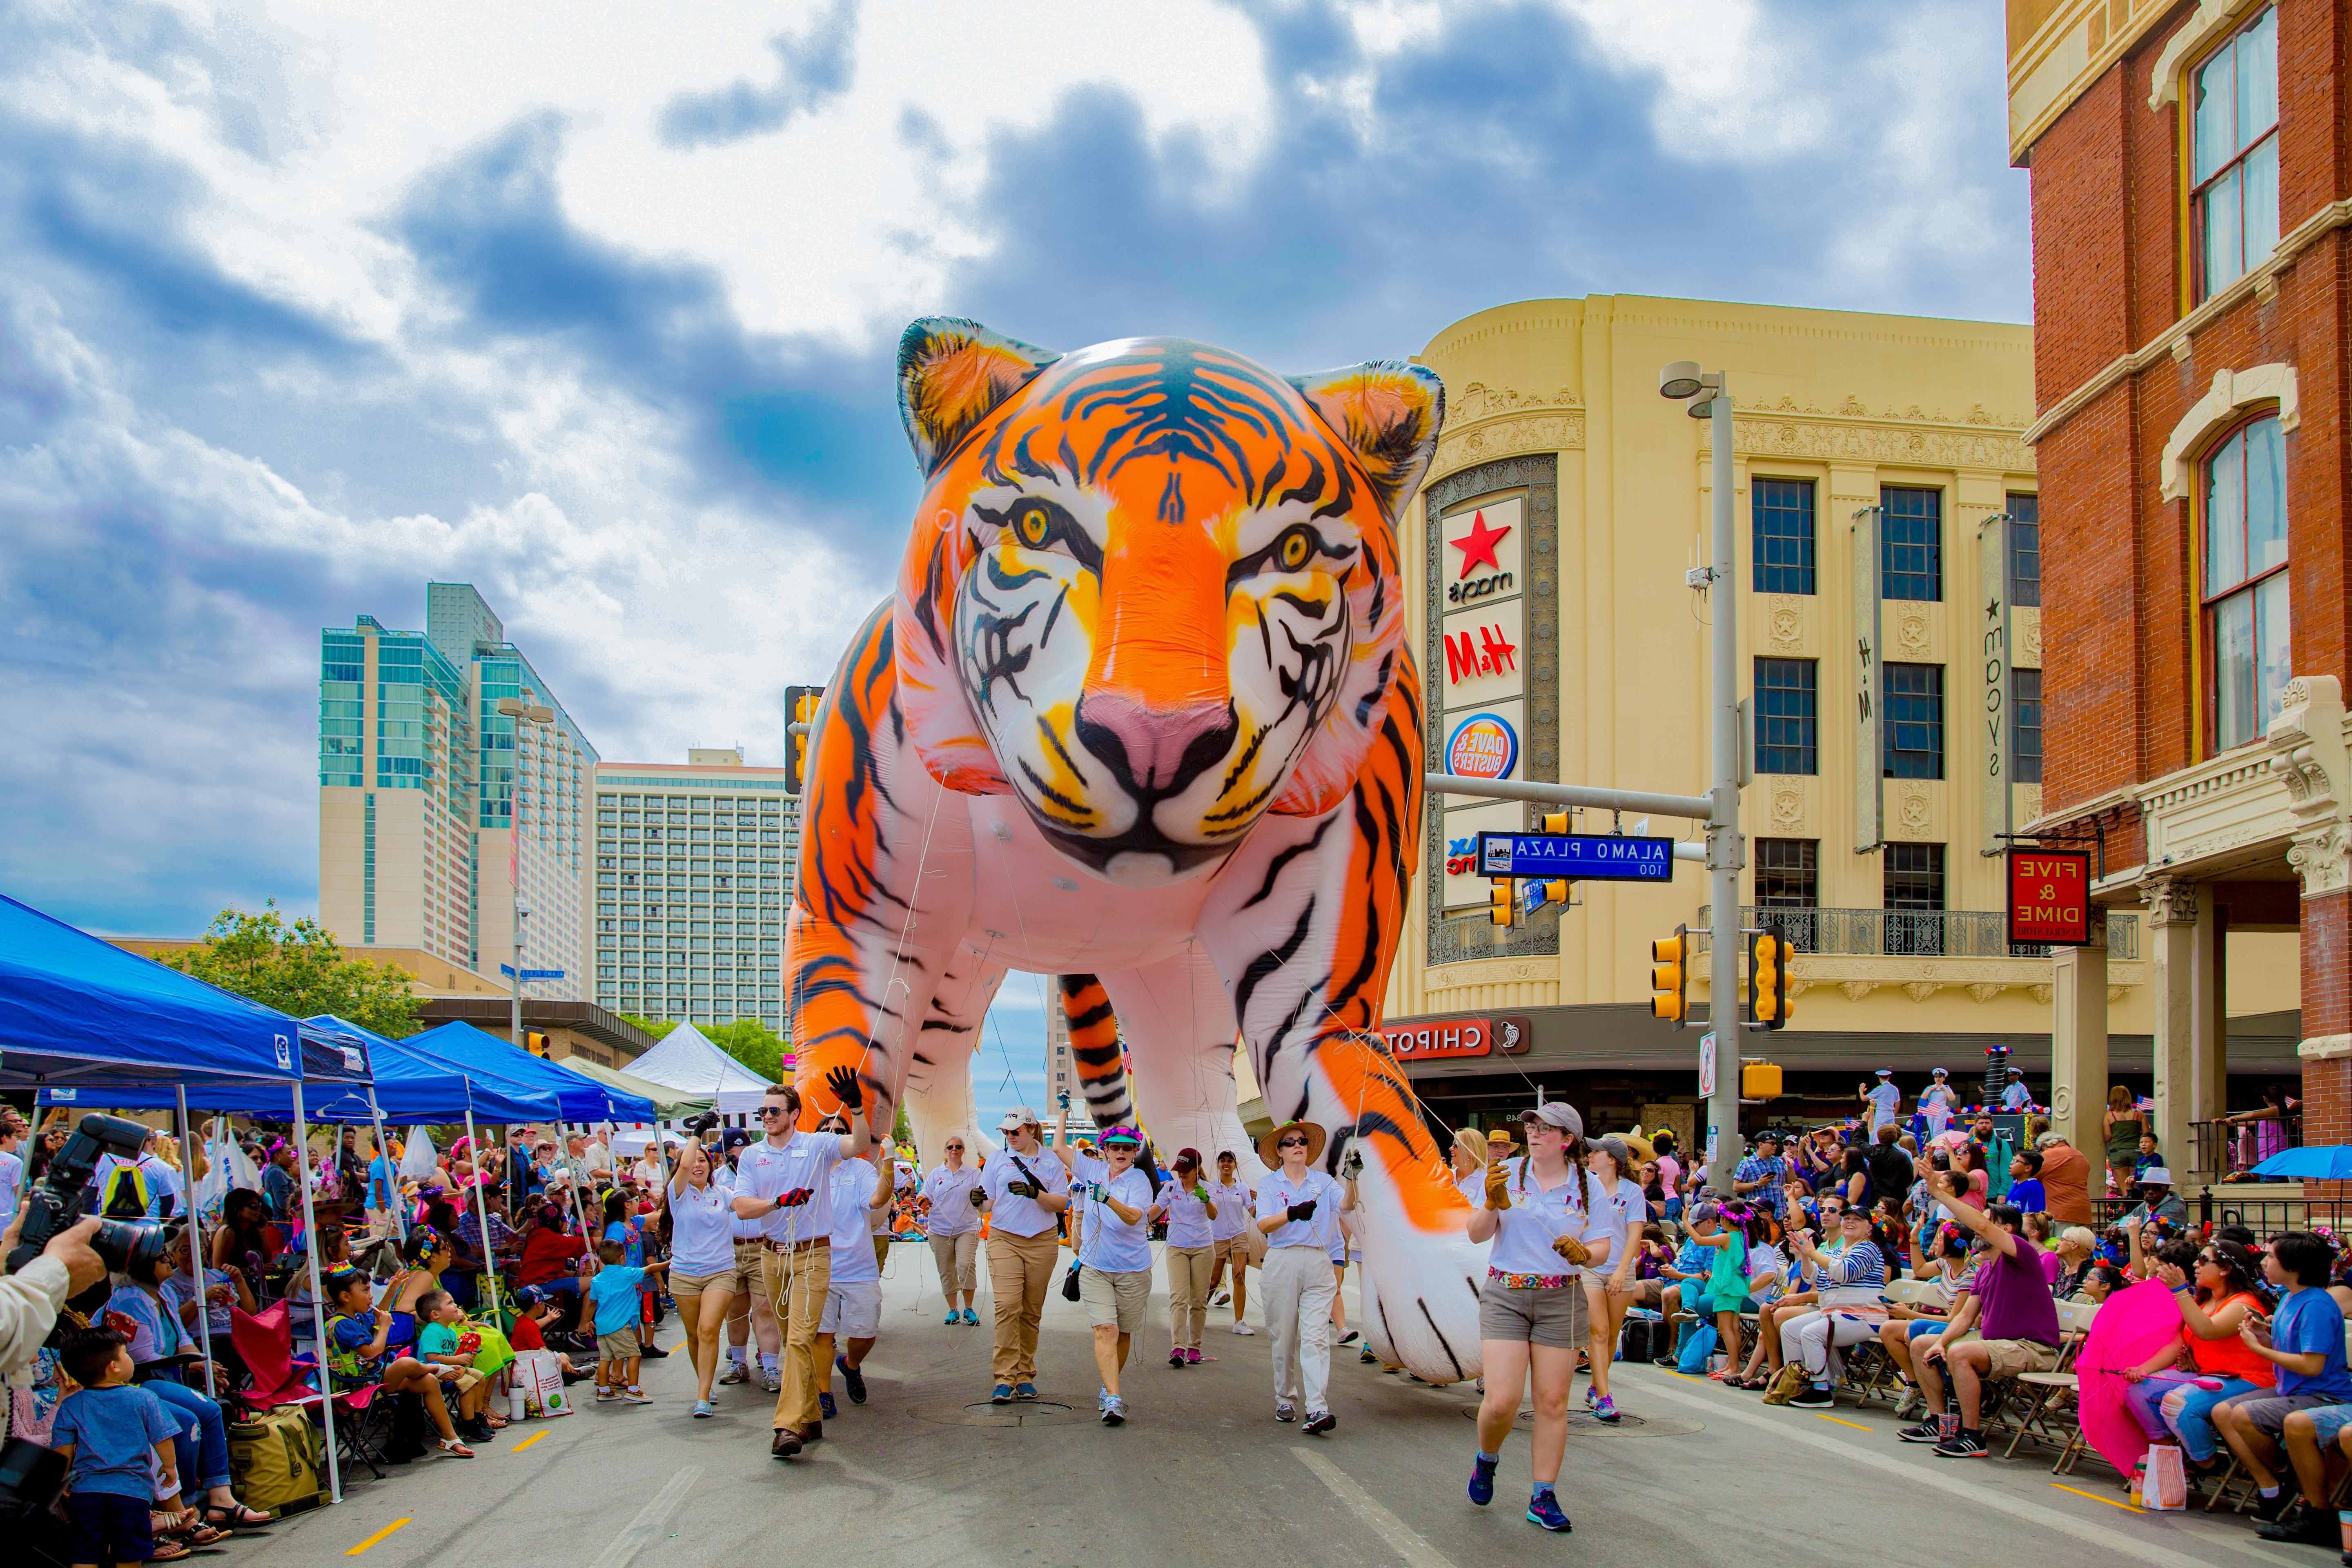 澳门金沙线上赌博官网's large tiger-shaped balloon in the Battle of Flowers Parade